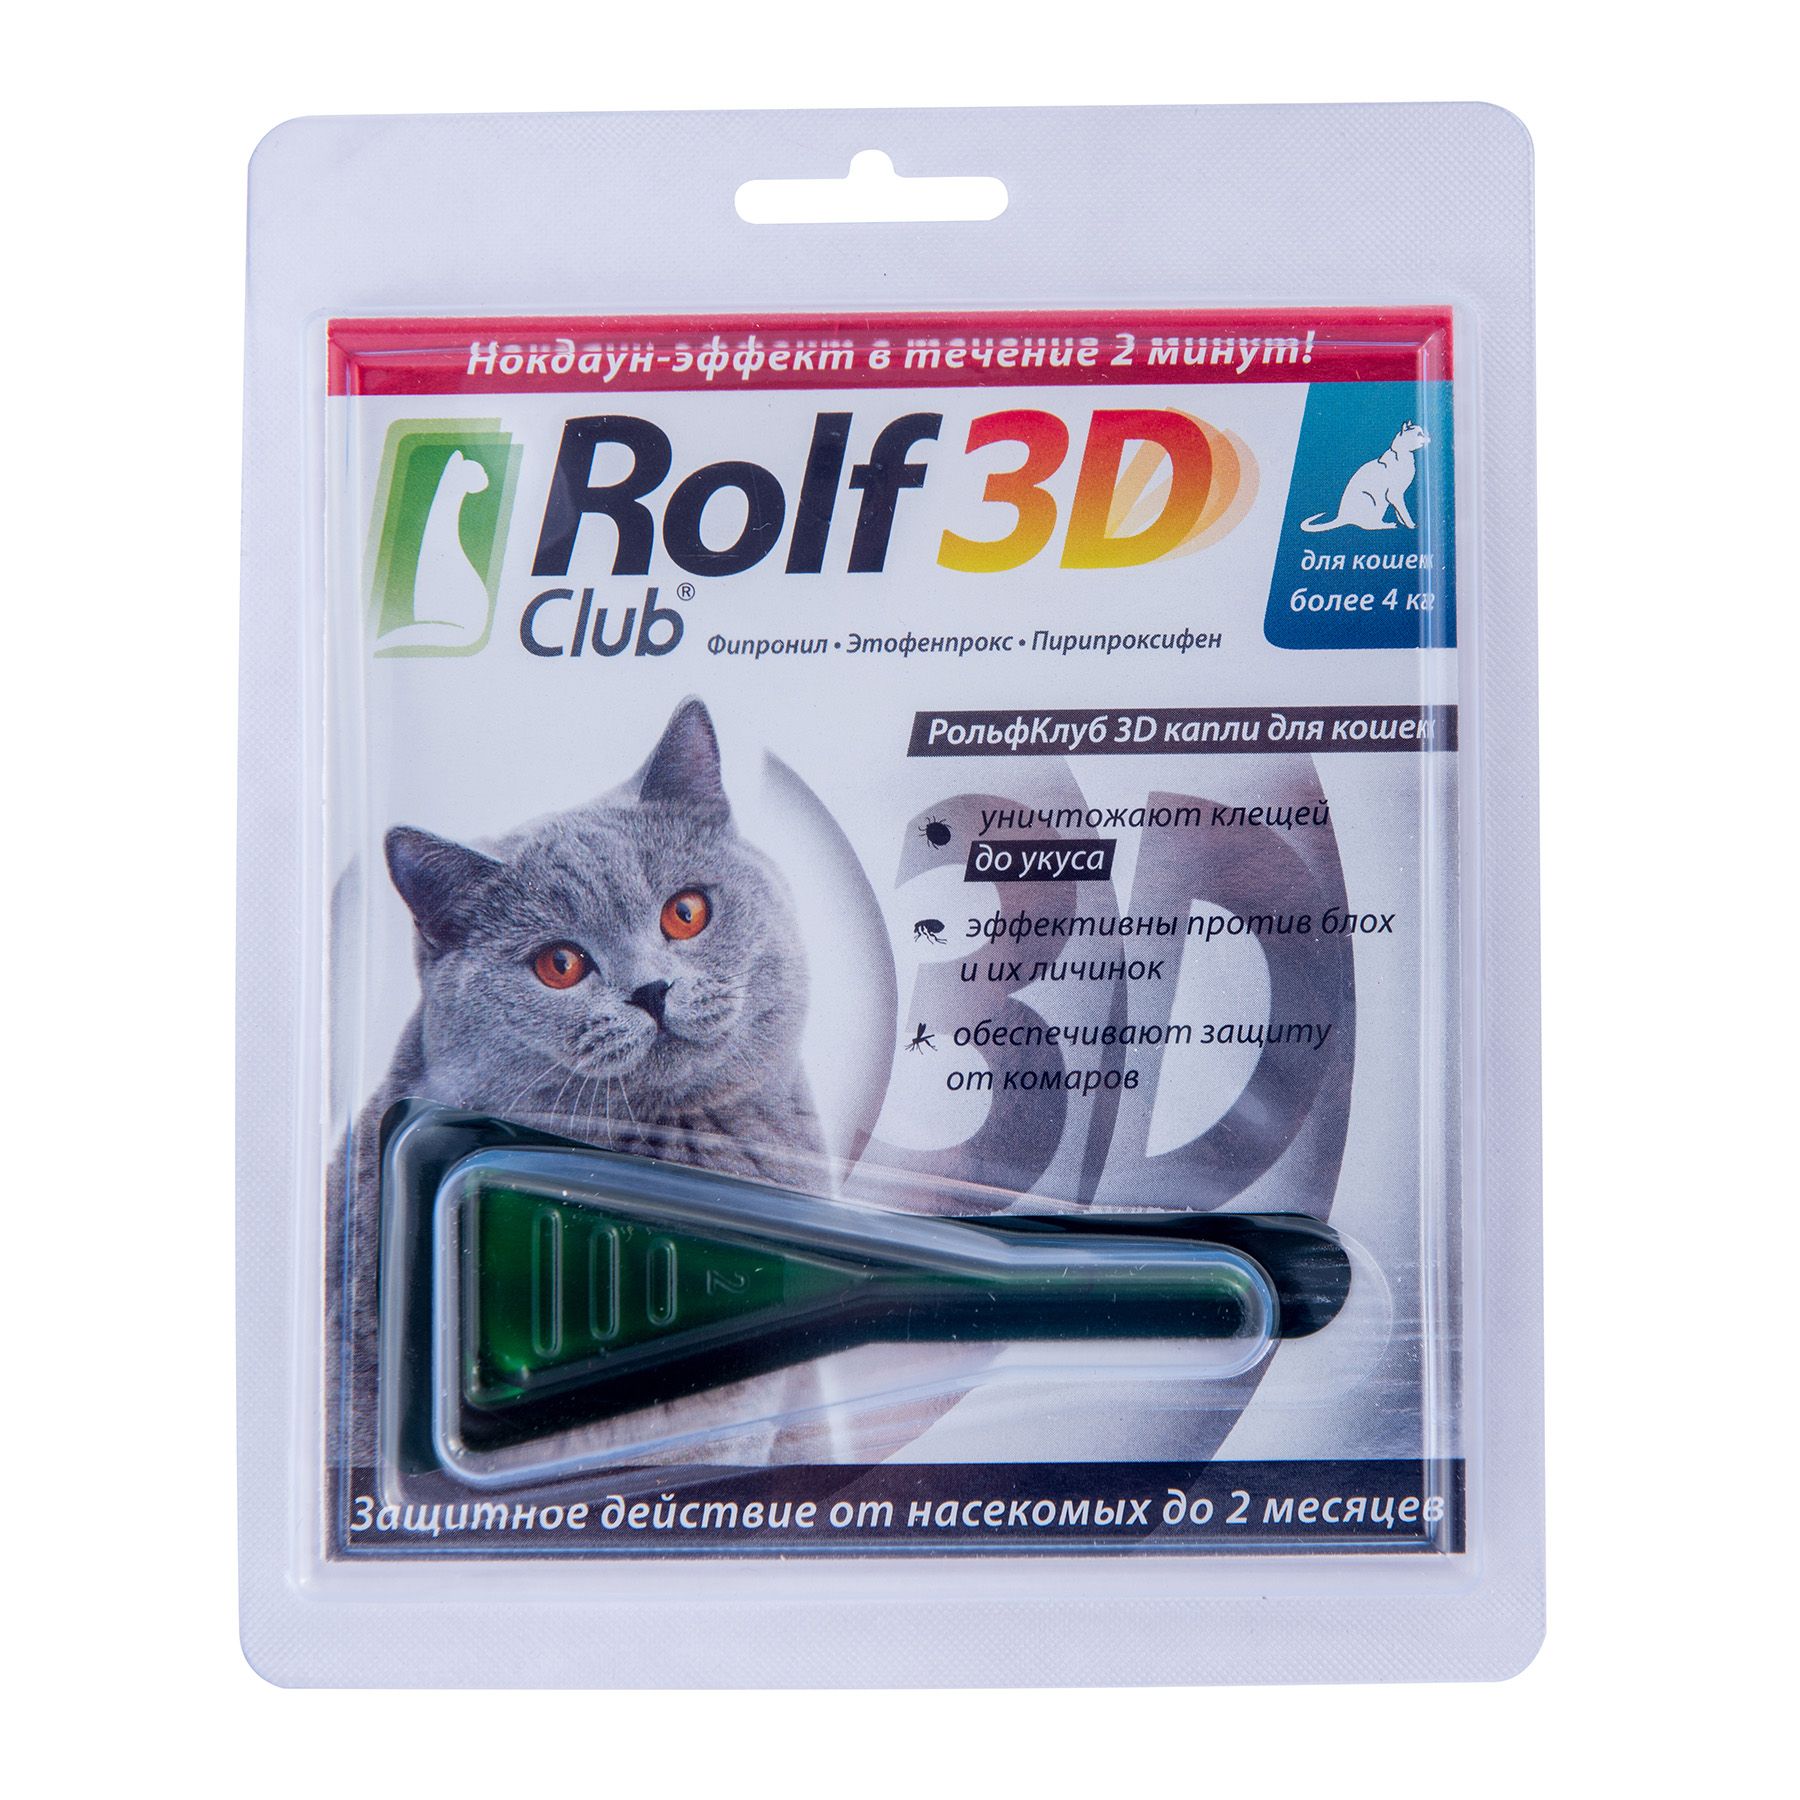 Rolf club 3d от блох. РОЛЬФ 3д капли для кошек. РОЛЬФ 3д капли для кошек от блох. Rolf 3d капли для кошек до 4 кг. Капли от блох, клещей Rolf 3d Club.